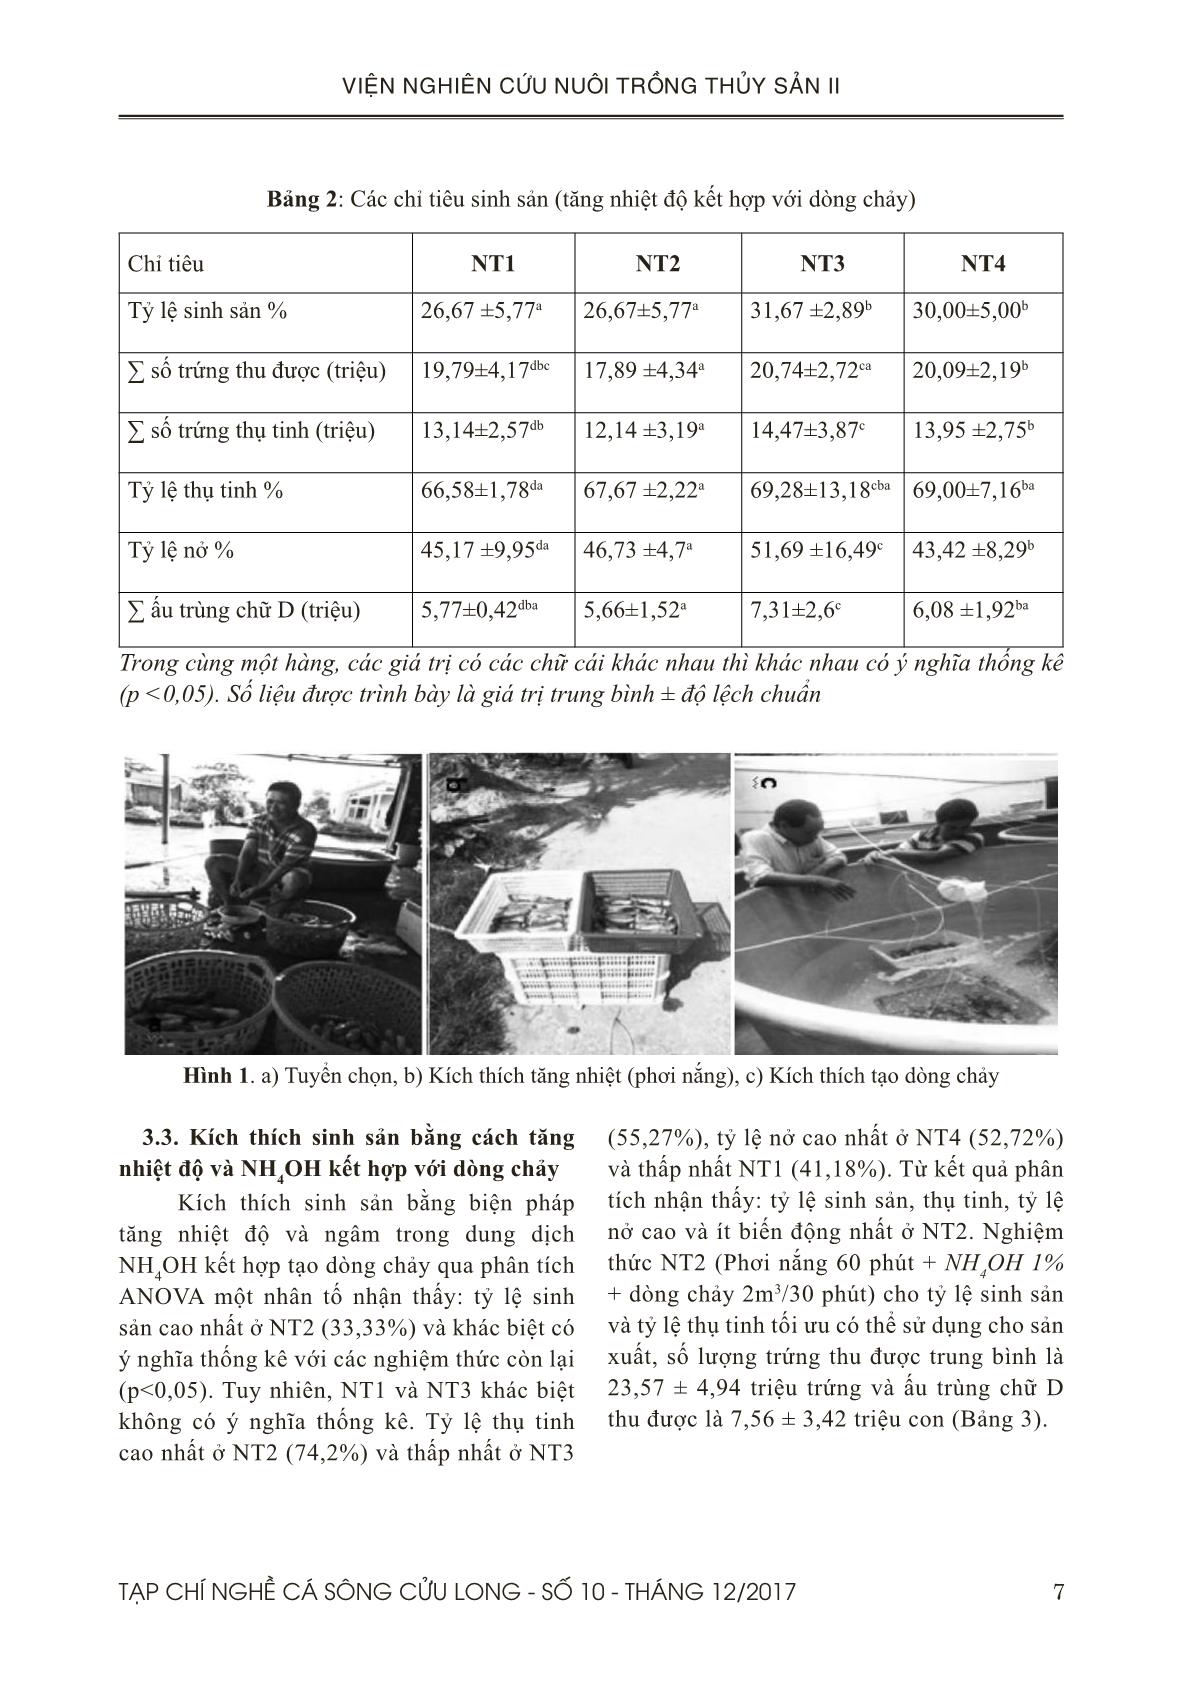 Tạp chí Nghề cá sông Cửu Long - Số 10 - Tháng 12/2017 trang 7